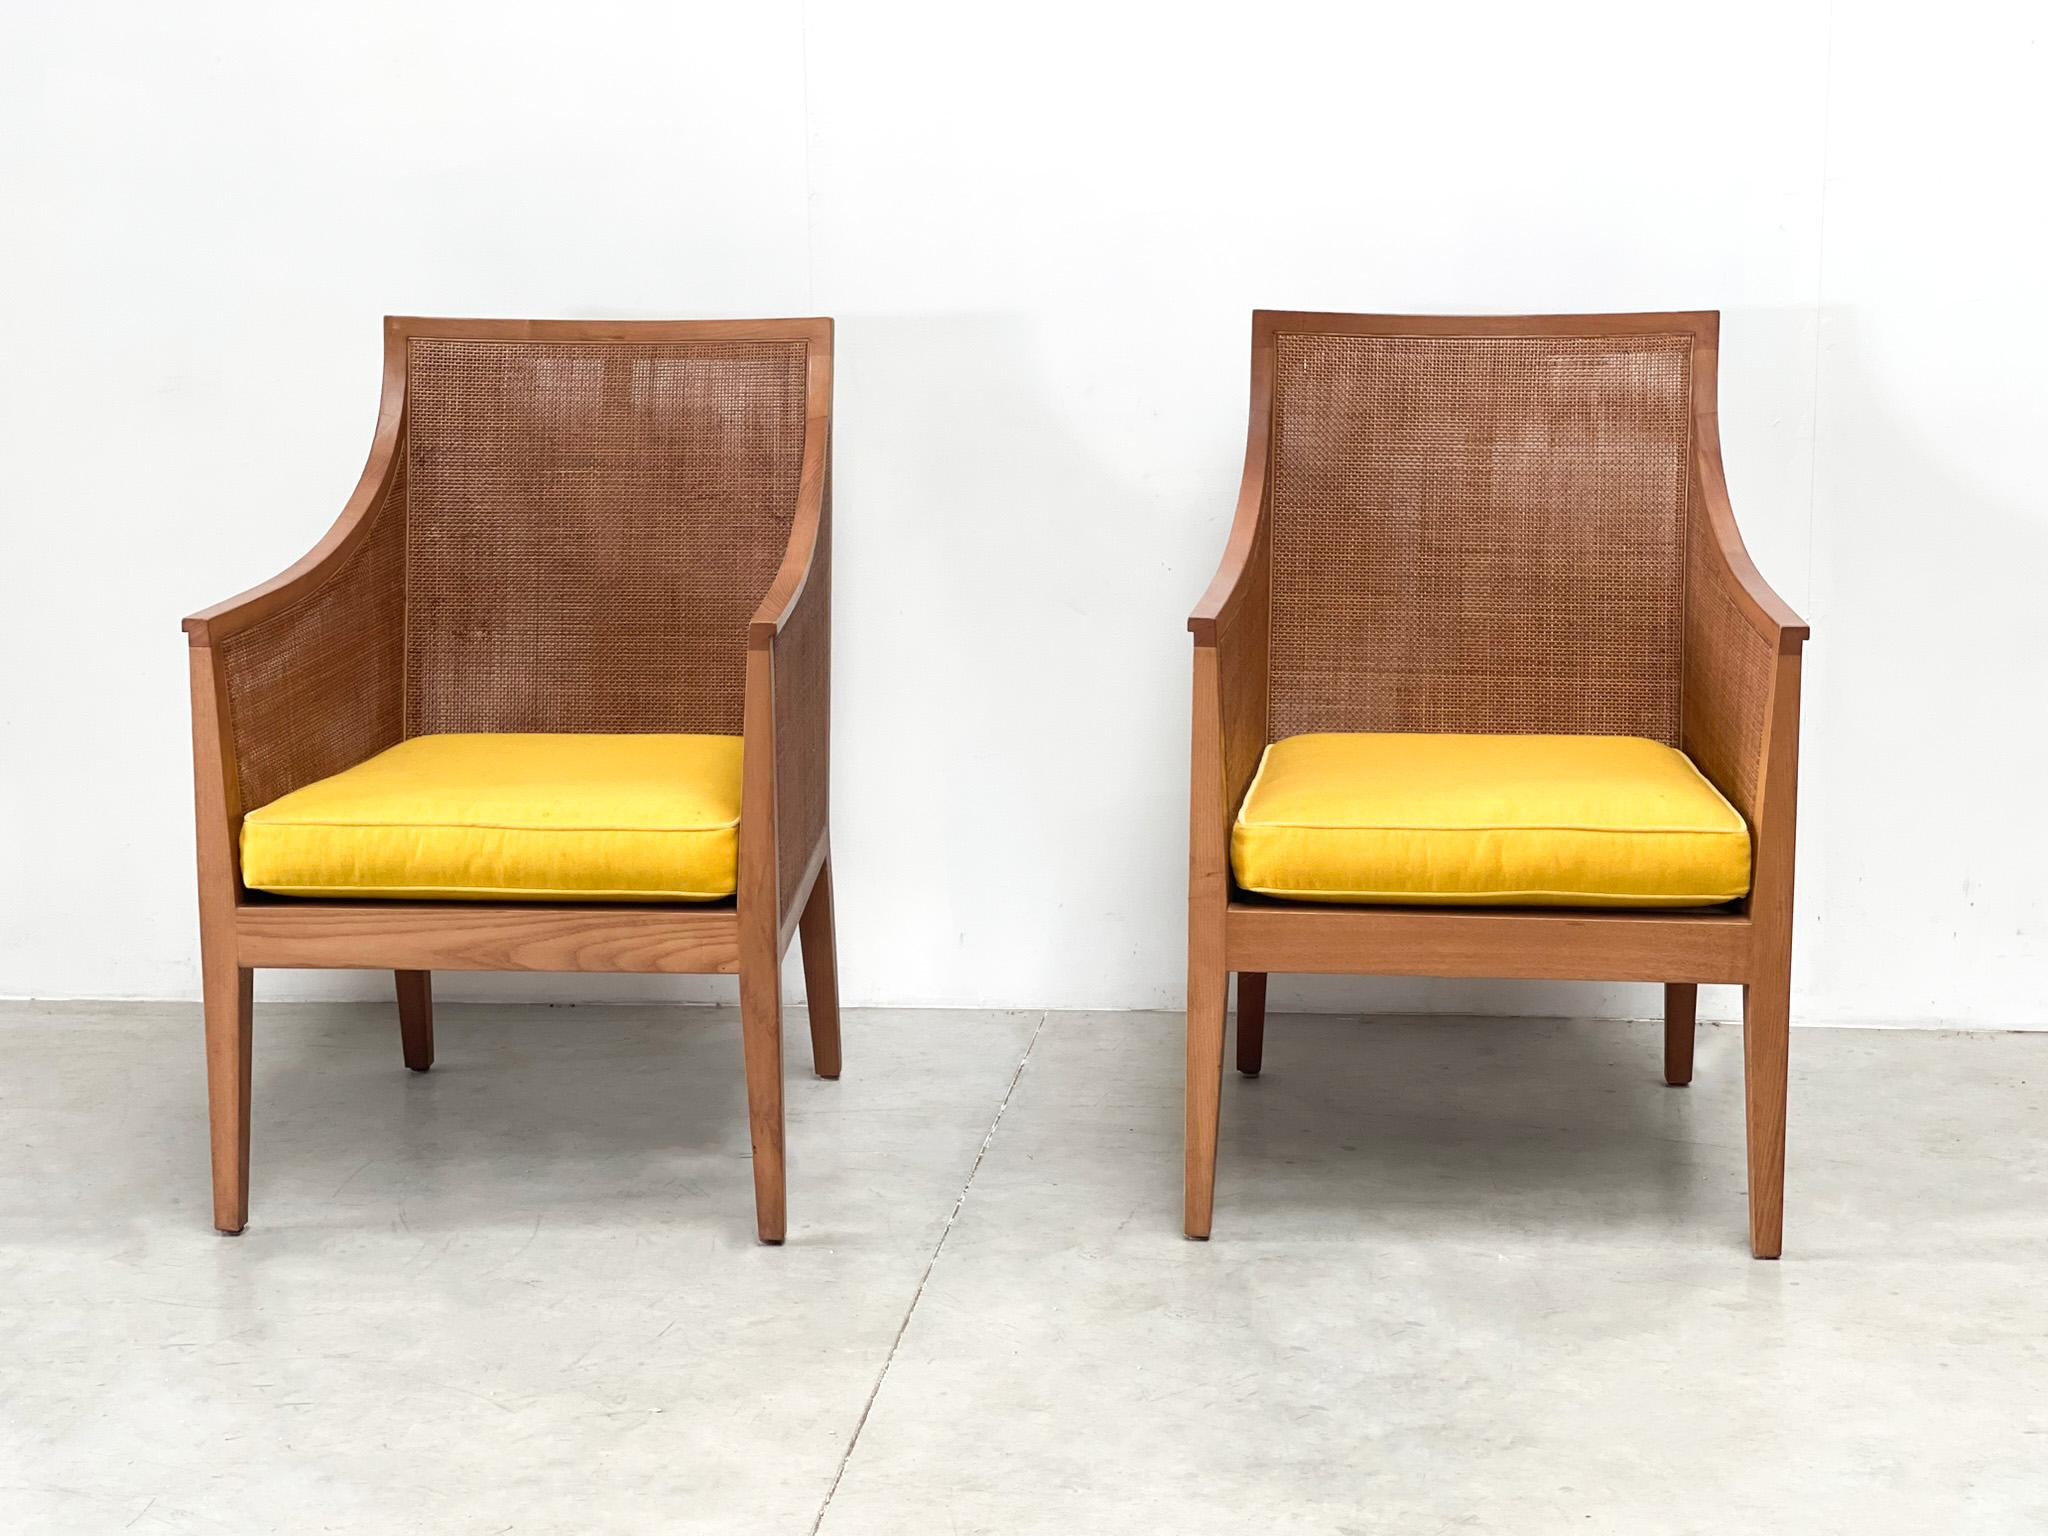 deux fauteuils des années 1970. Ce duo de tête a été conçu par Antonio Citterio dans les années 1970 ! Les chaises ont un aspect et un toucher contemporains. Ils sont constitués de
Les chaises sont en très bon état. Plusieurs sont disponibles si